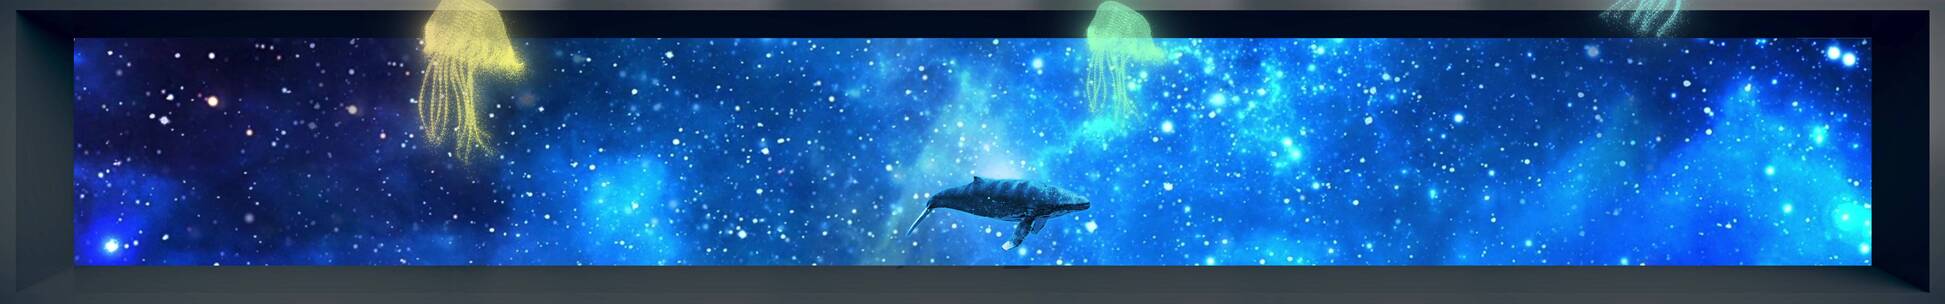 海底3D鲸鱼